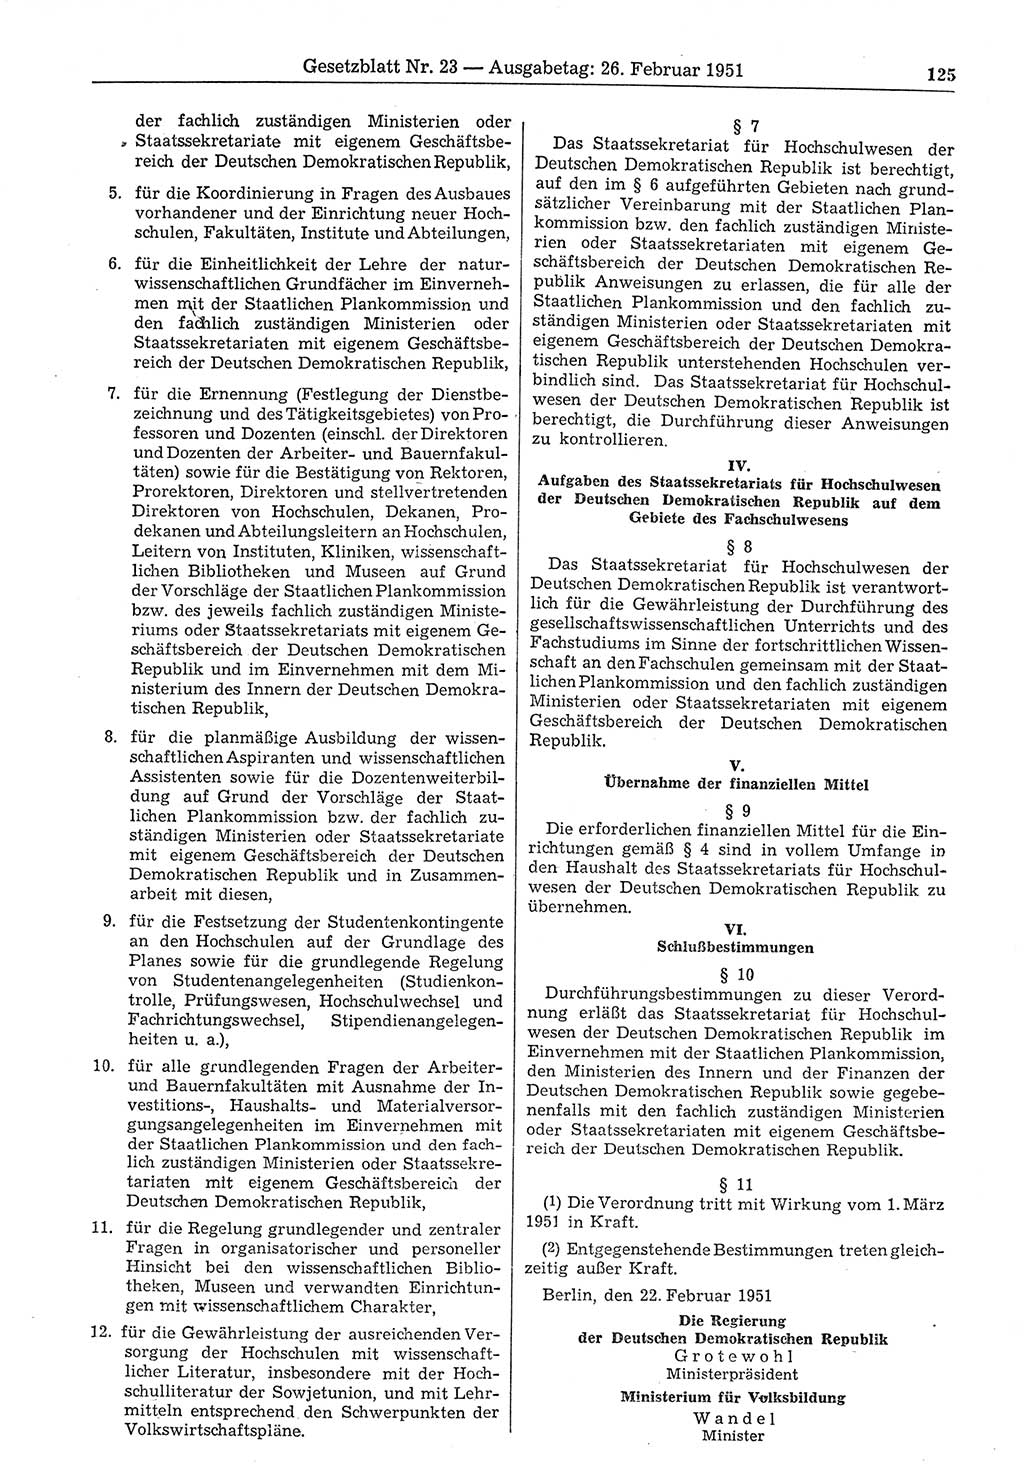 Gesetzblatt (GBl.) der Deutschen Demokratischen Republik (DDR) 1951, Seite 125 (GBl. DDR 1951, S. 125)